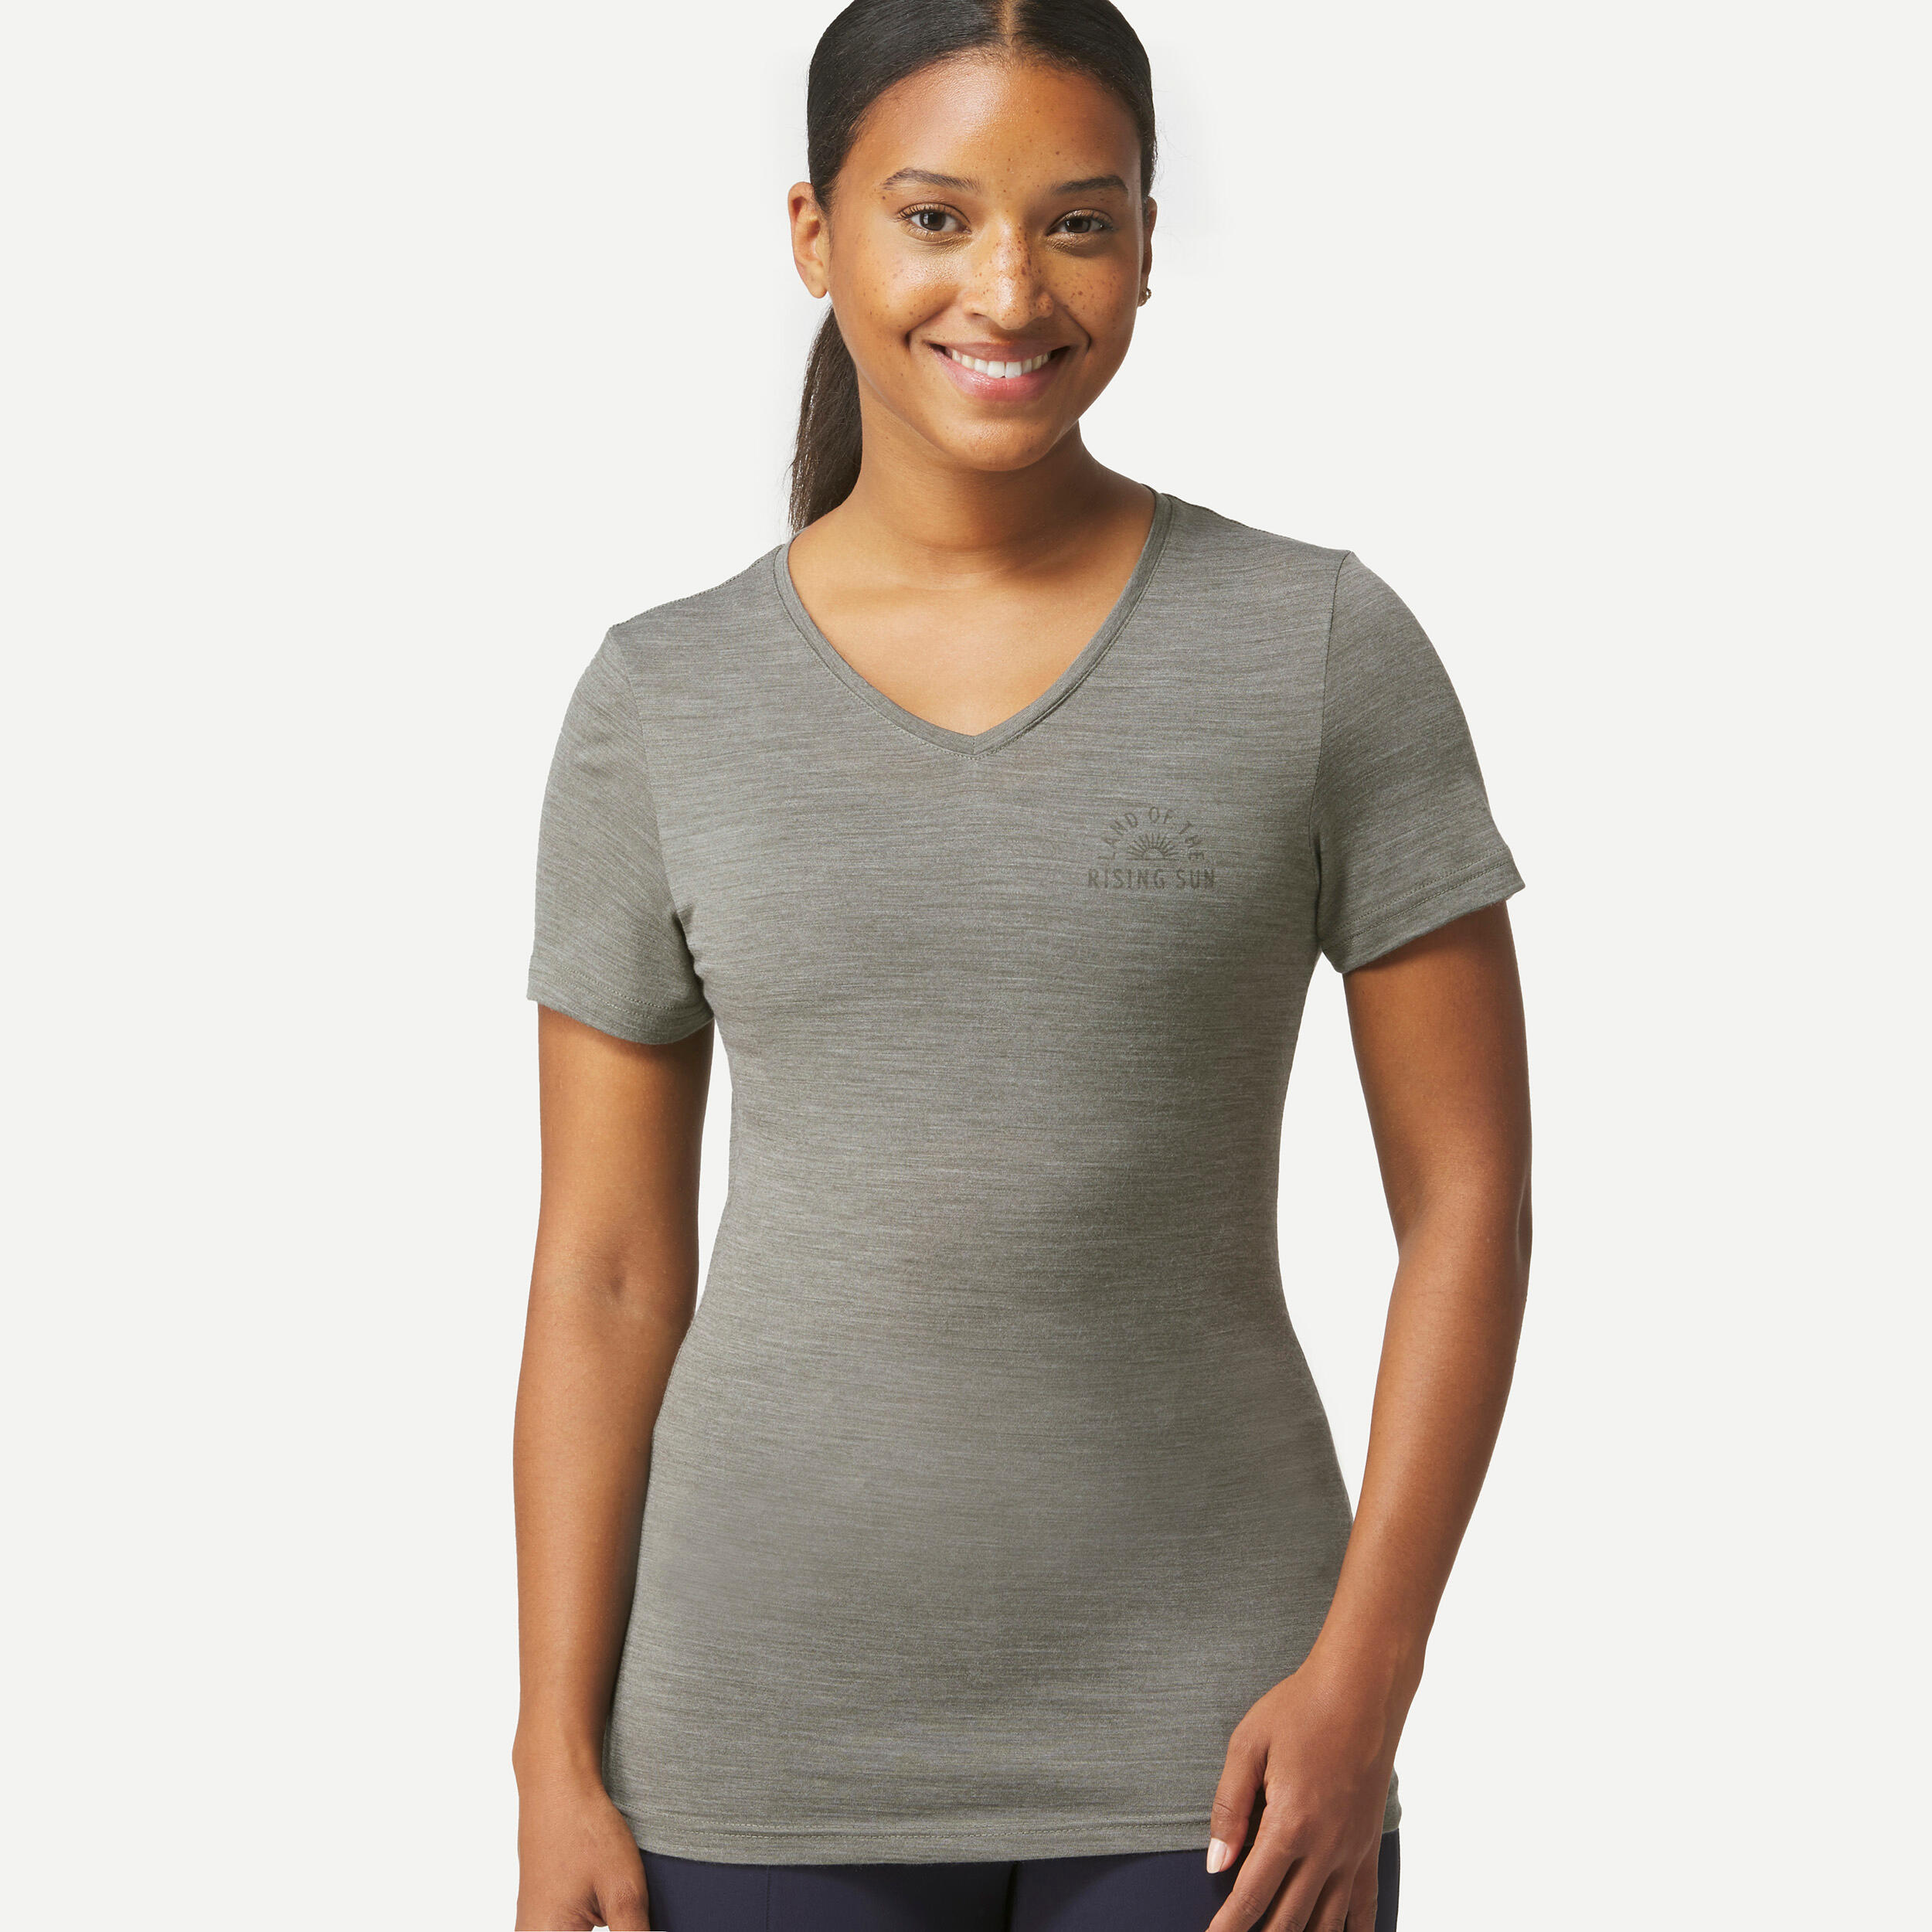 Women's Travel Trekking Merino Wool Short-Sleeved T-Shirt - TRAVEL 500 3/4